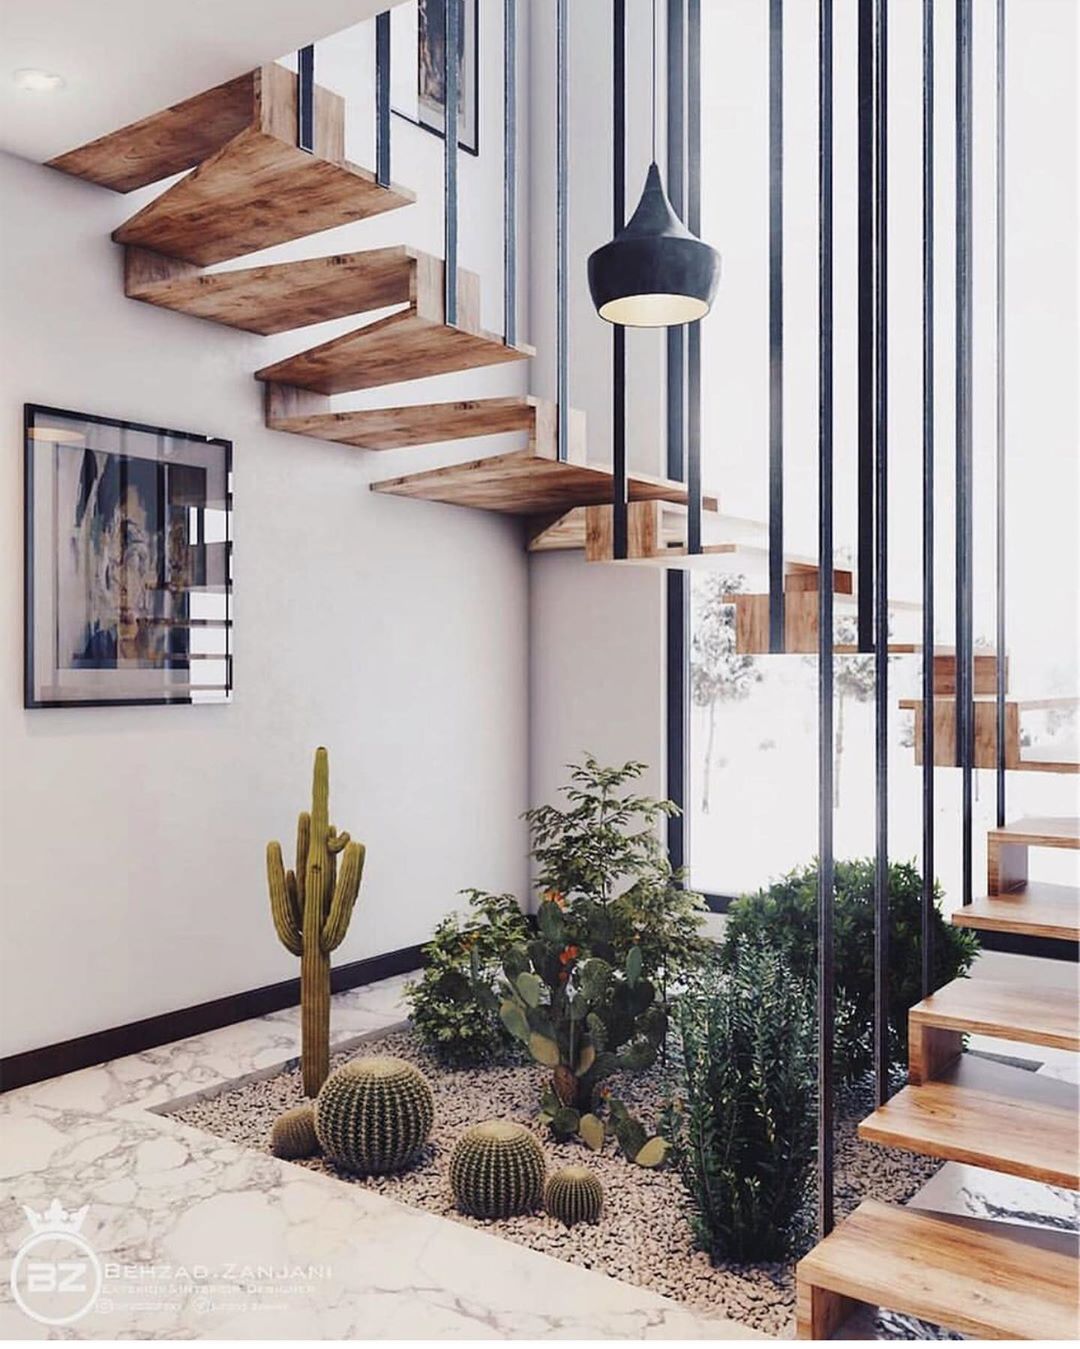 jardin de cactus sous les escaliers